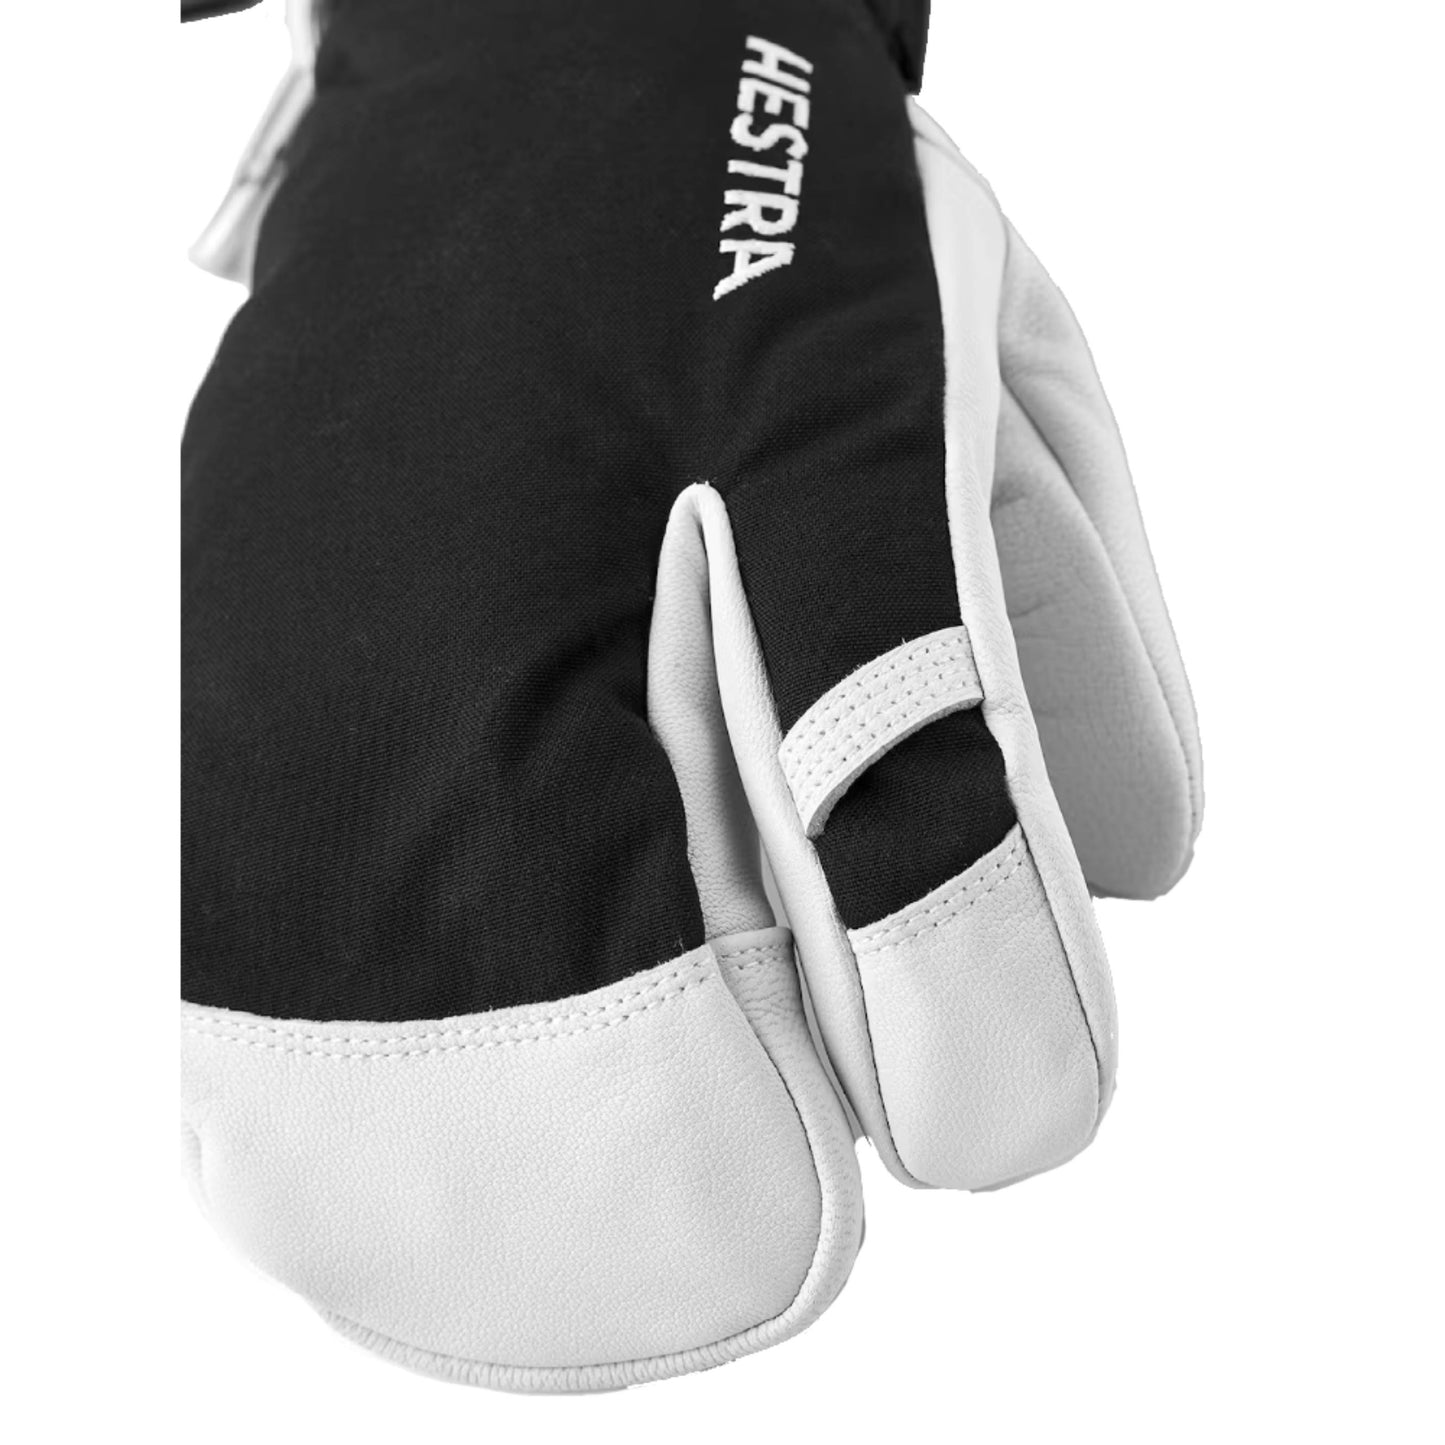 Hestra Army Leather Heli Ski 3-Finger Glove 3 -Finger Detail 